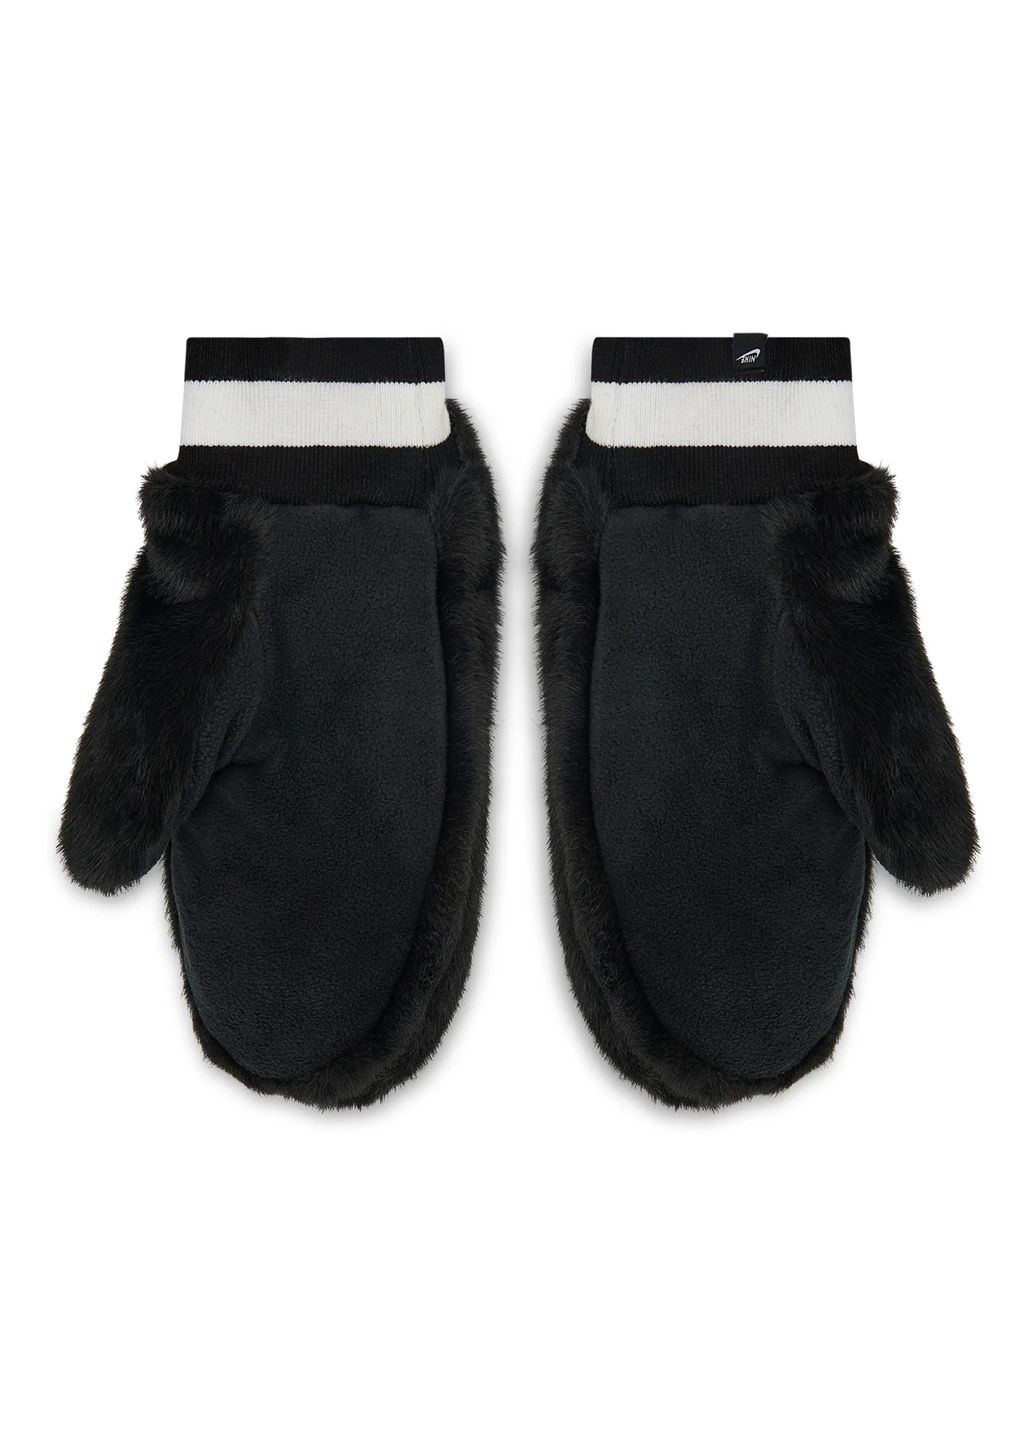 Перчатки оригинал женские черные Nike warm mittens womens (264660577)